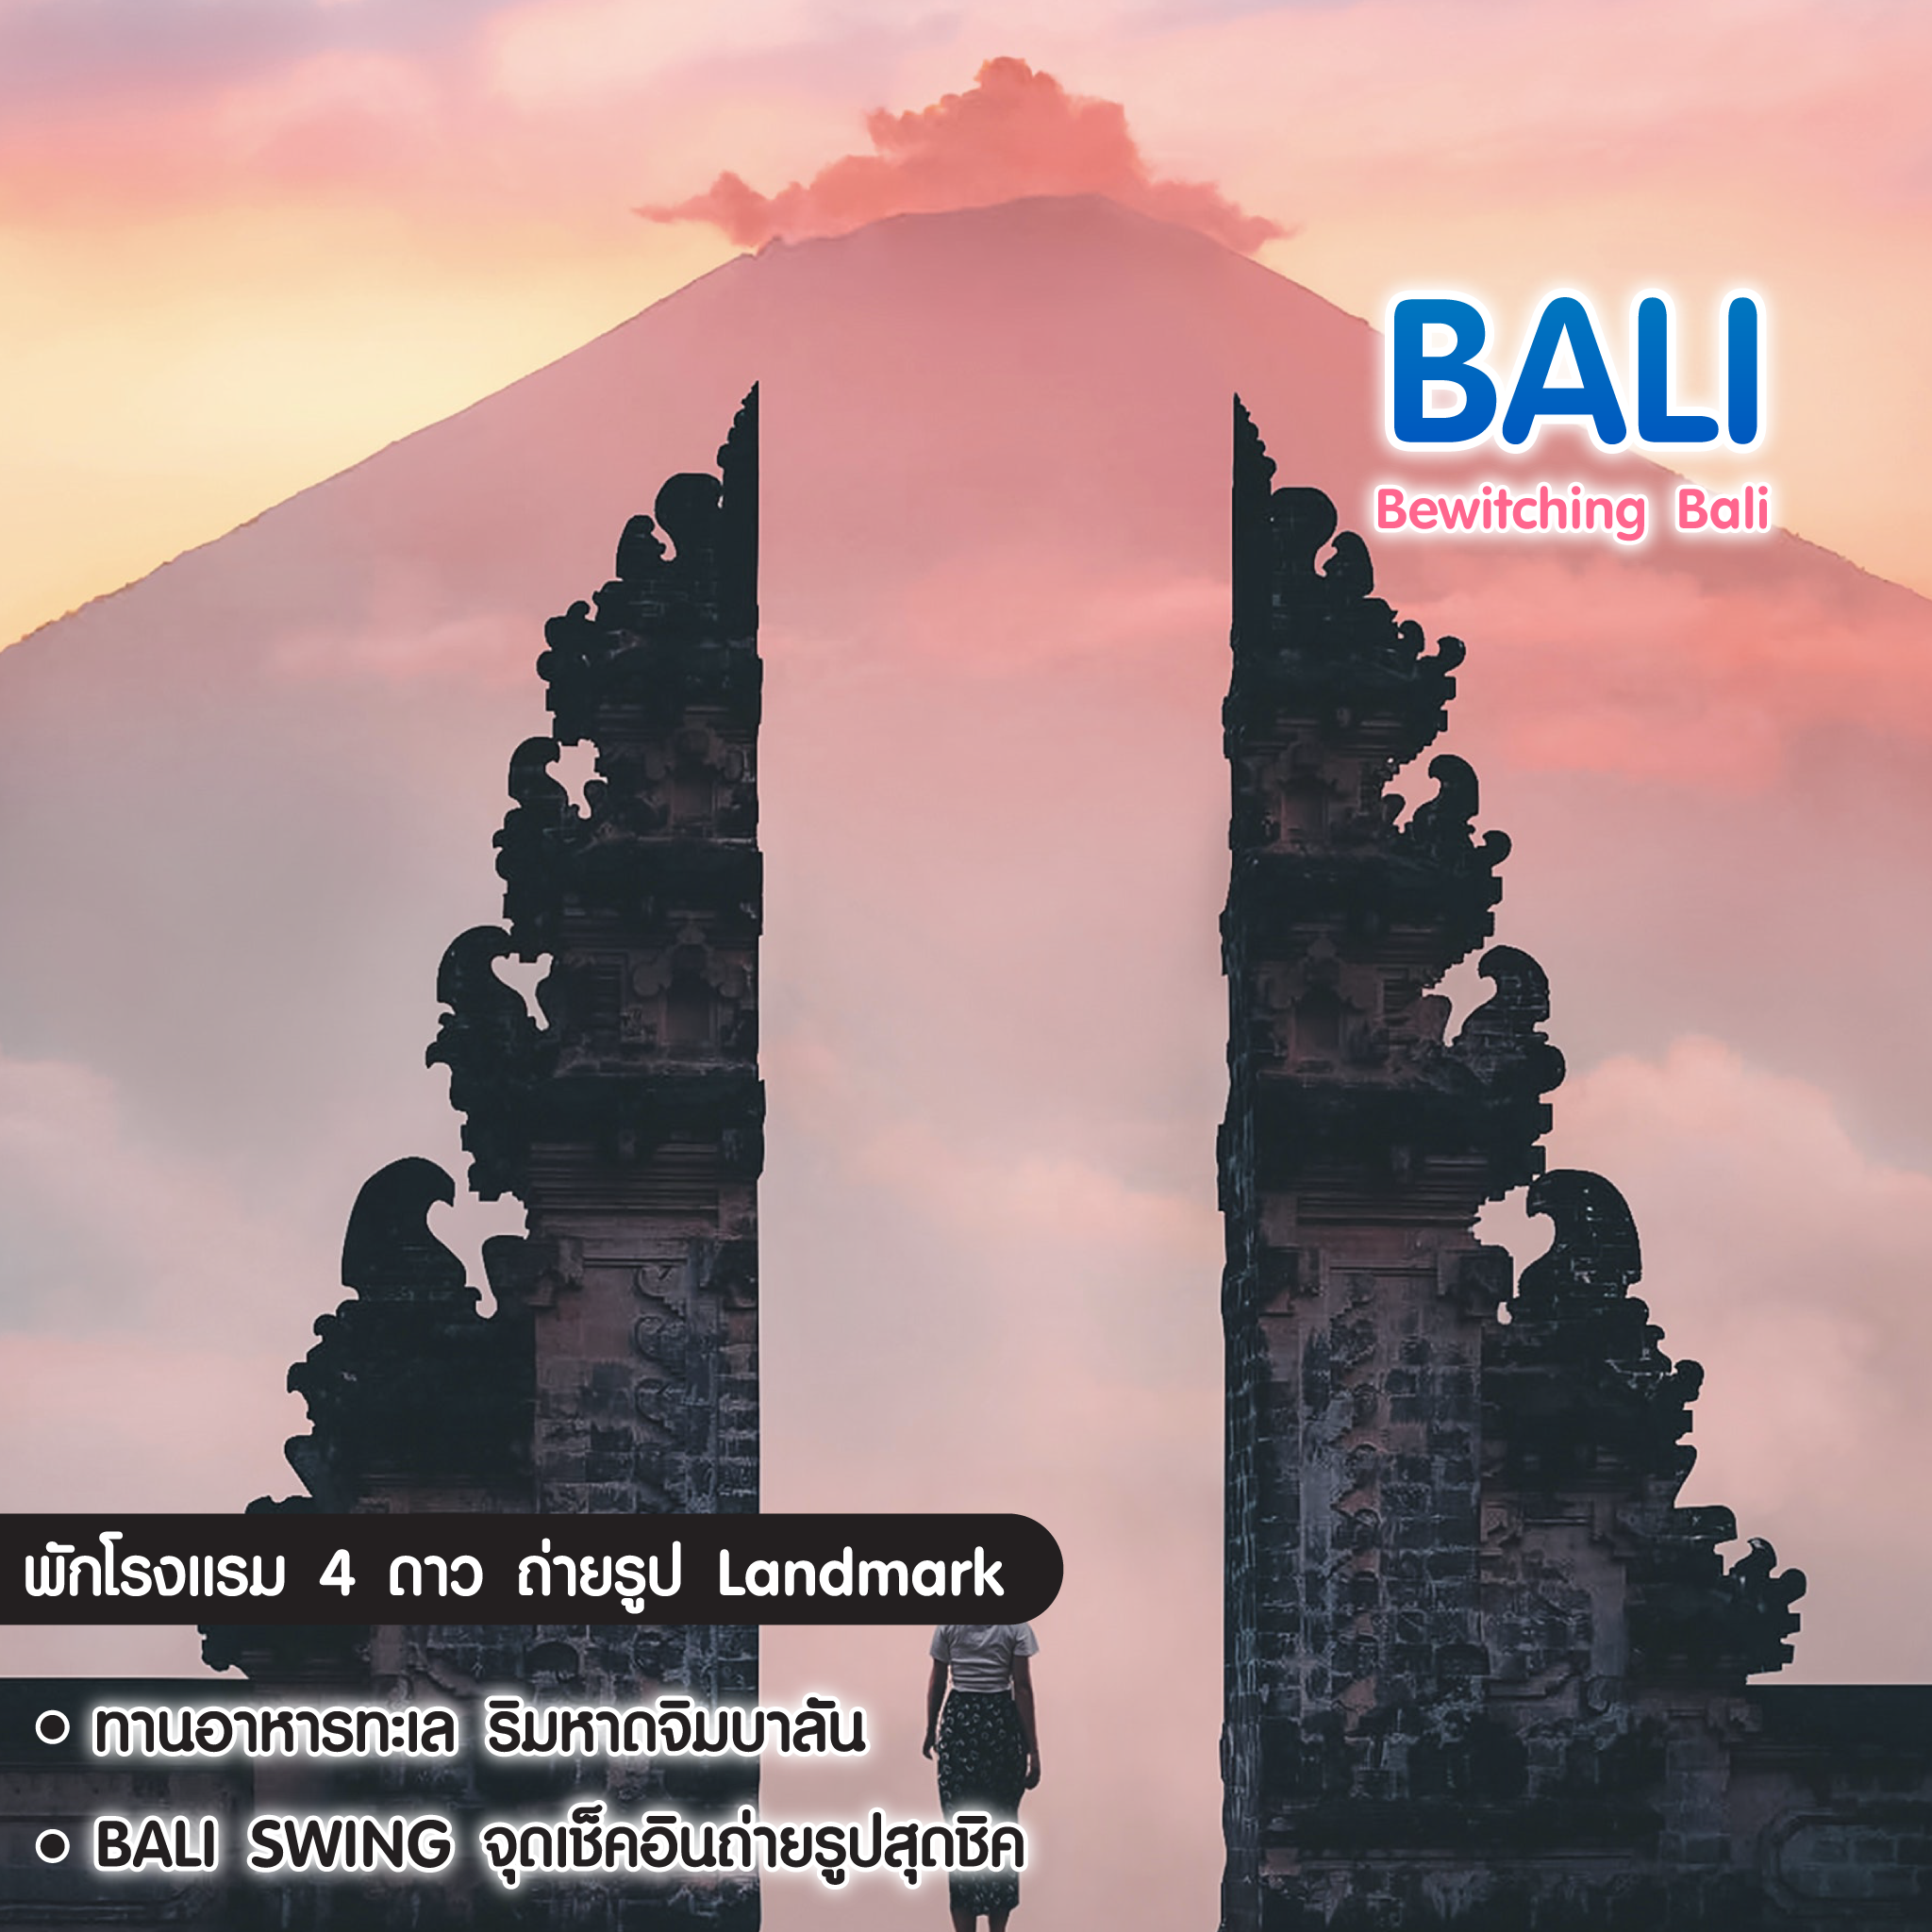 ทัวร์บาหลี Bewitching Bali วัดเบซากีย์ เกาะนูซาเปดิน่า 